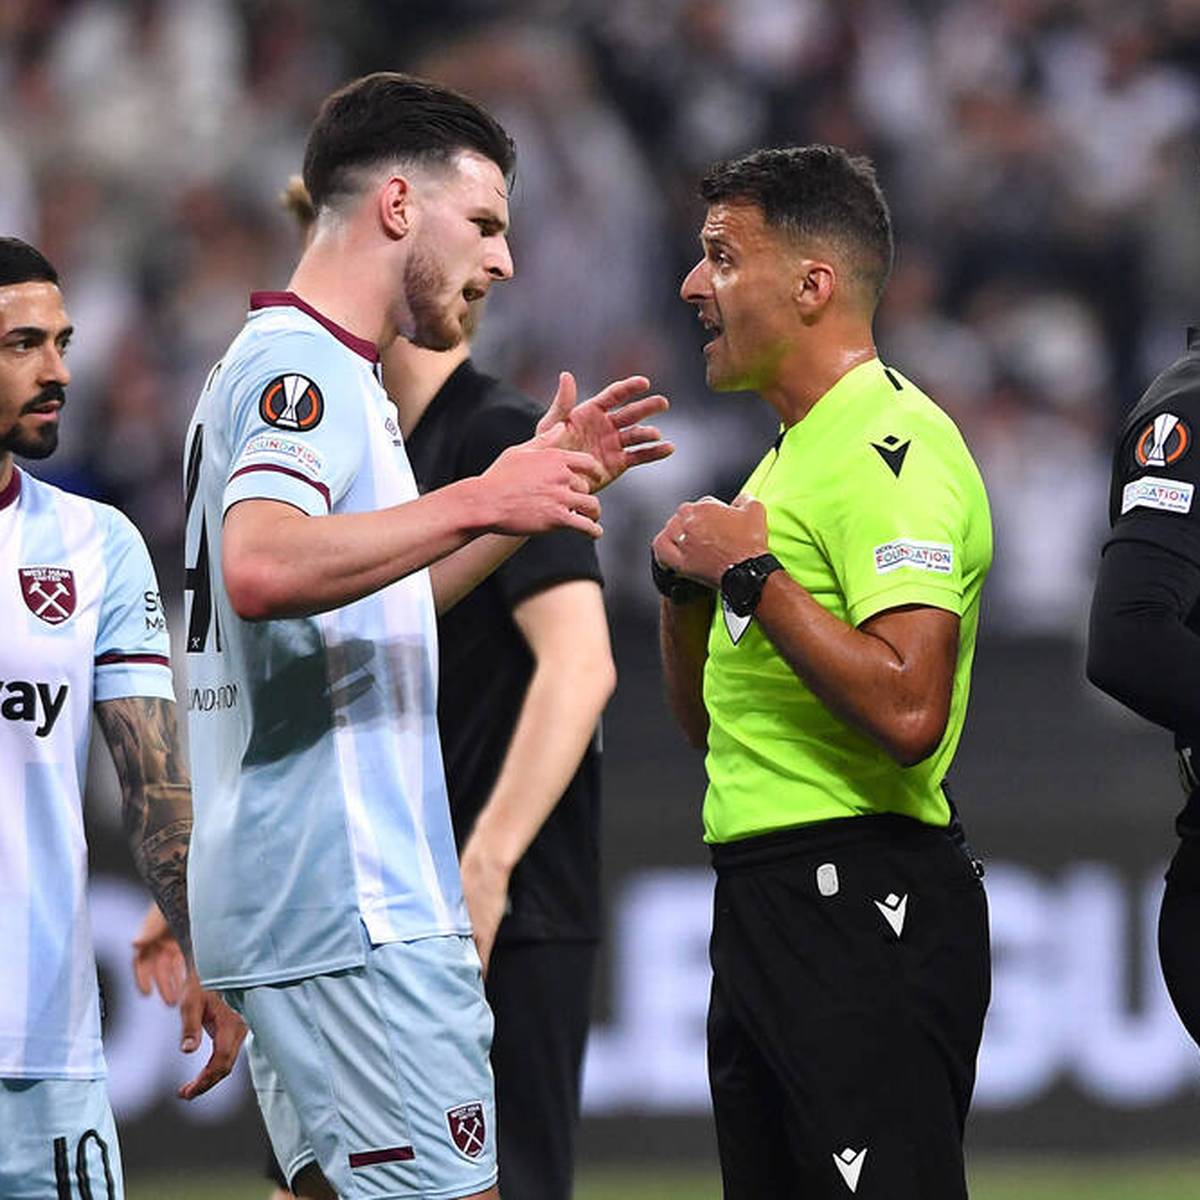 Nach der Halbfinalpleite gegen Eintracht Frankfurt in der Europa League fällt Declan Rice mit üblen Vorwürfen gegen den Schiedsrichter auf. Nun spricht die UEFA eine Strafe aus.